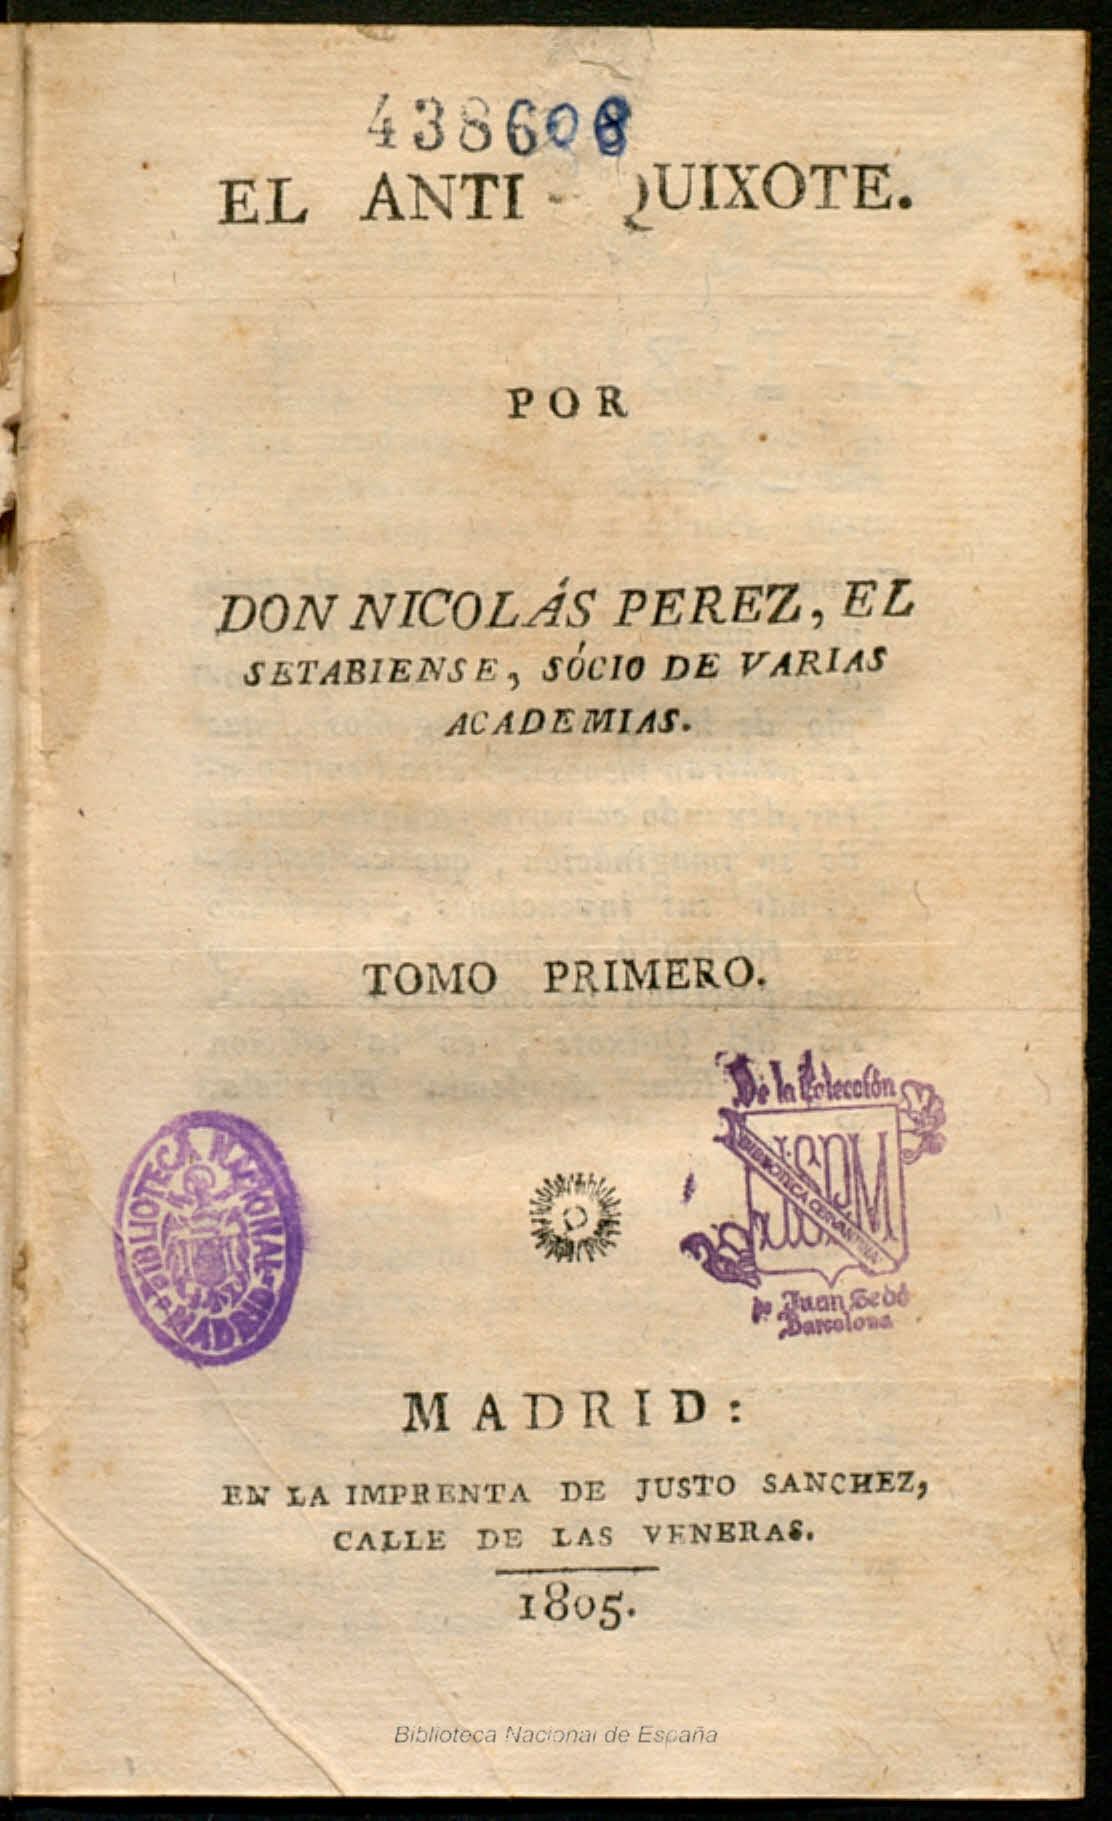 El Anti-Quixote por Don Nicolás Pérez, el Setabiense, socio de varias academias, Tomo primero